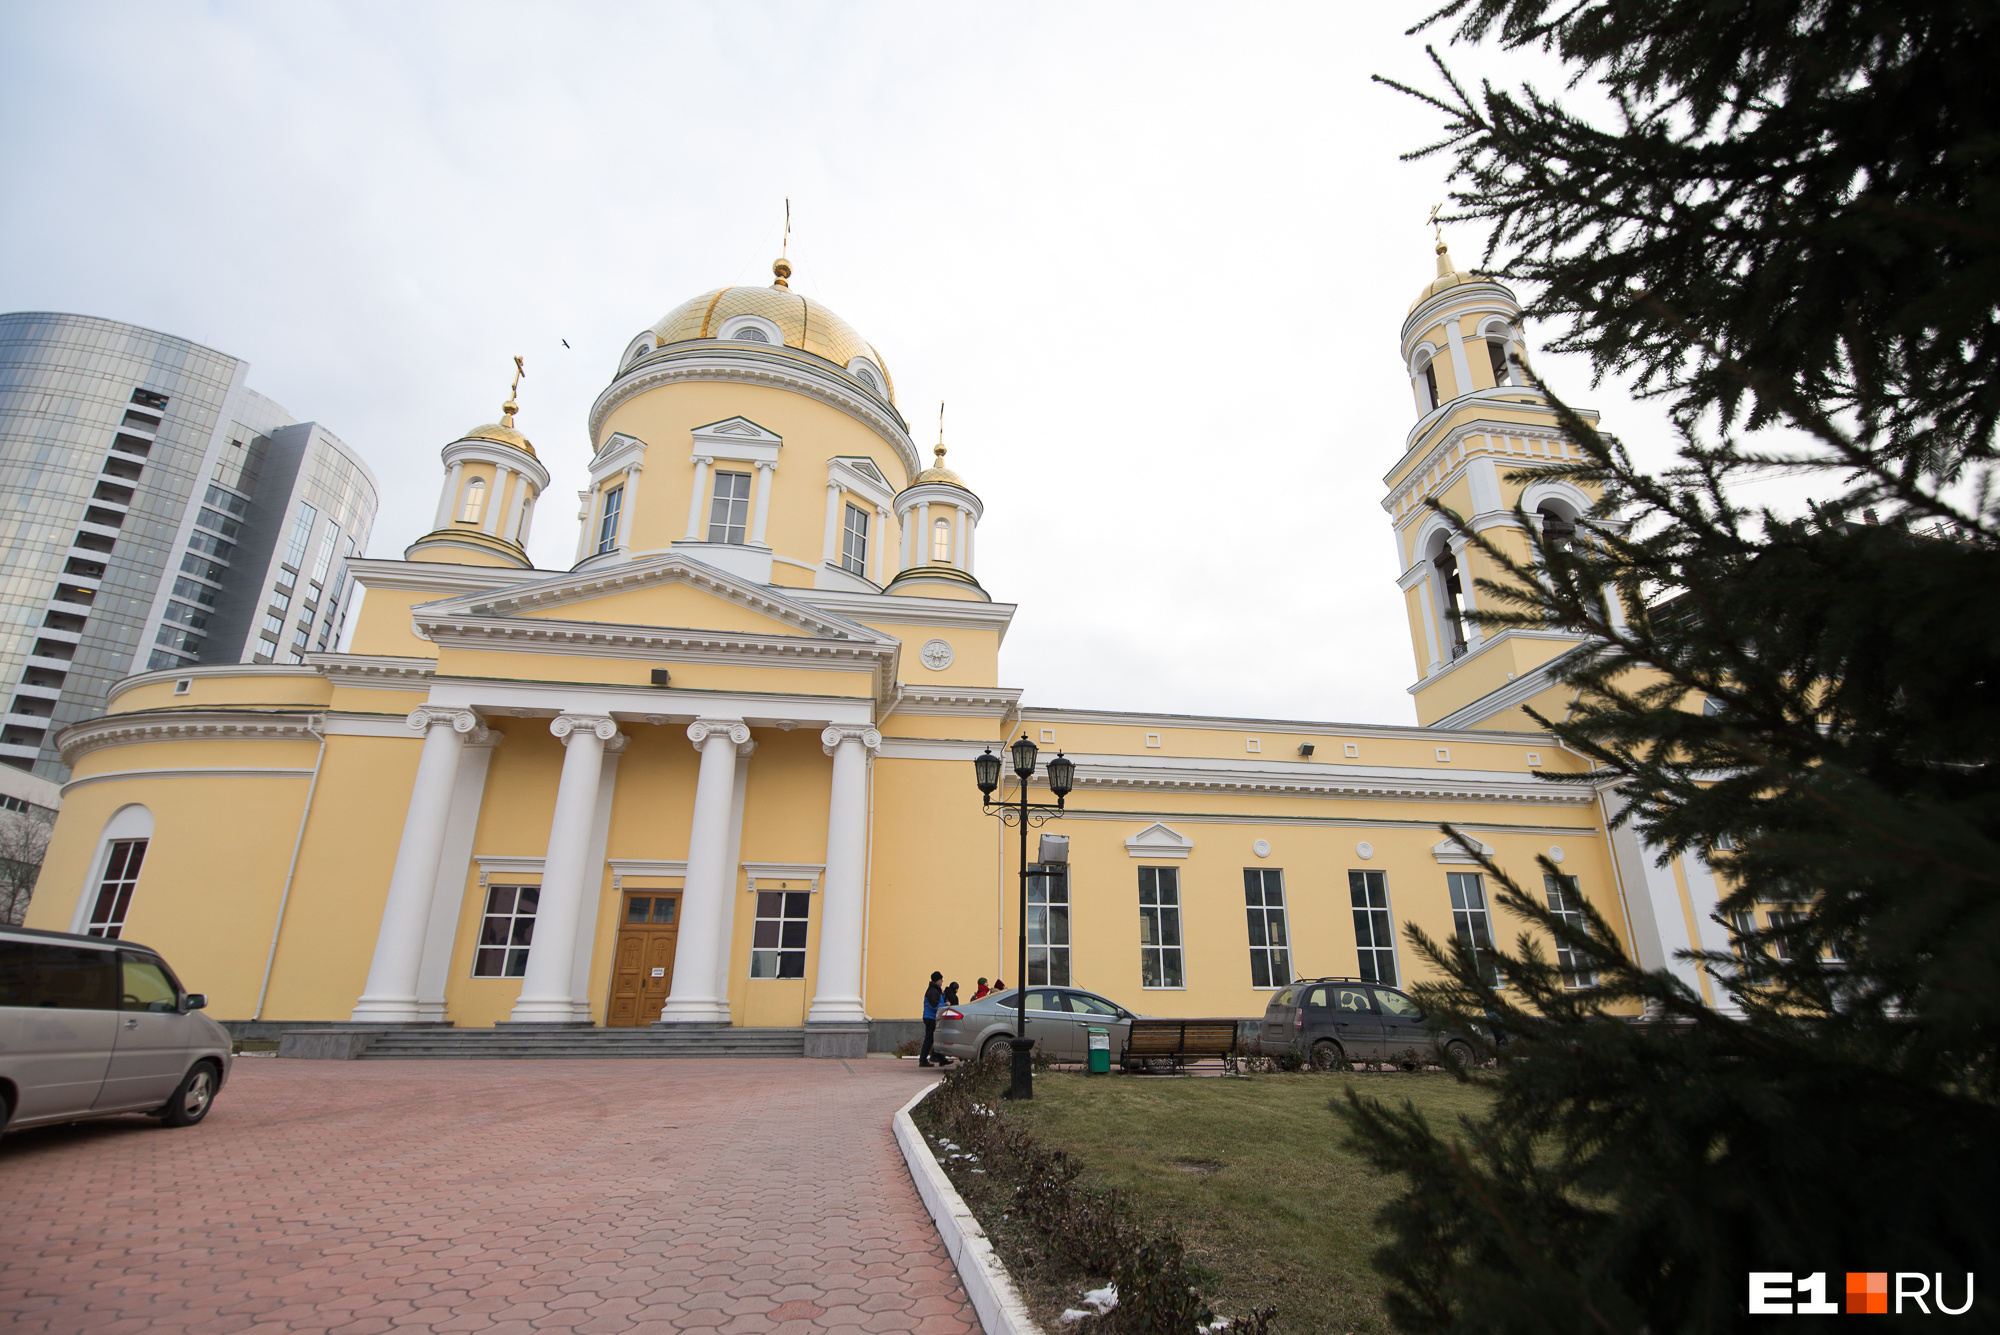 Сейчас это один из главных действующих соборов Екатеринбурга